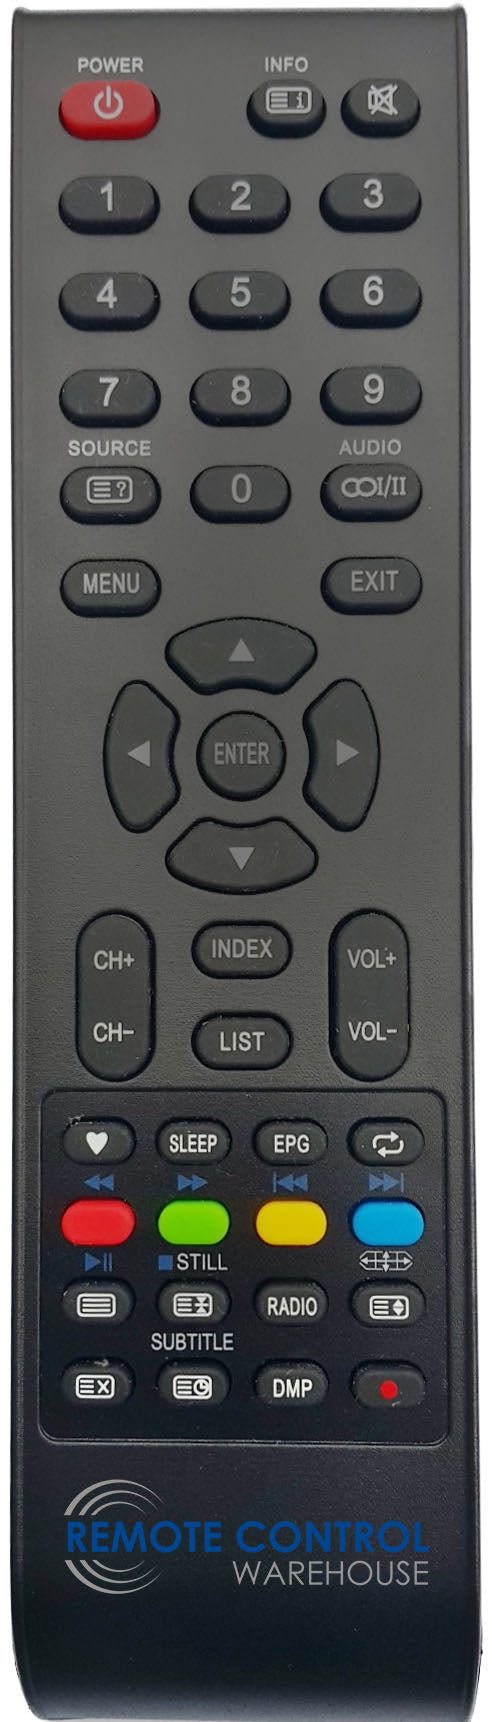 CHIQ L55G4 TV Remote Control